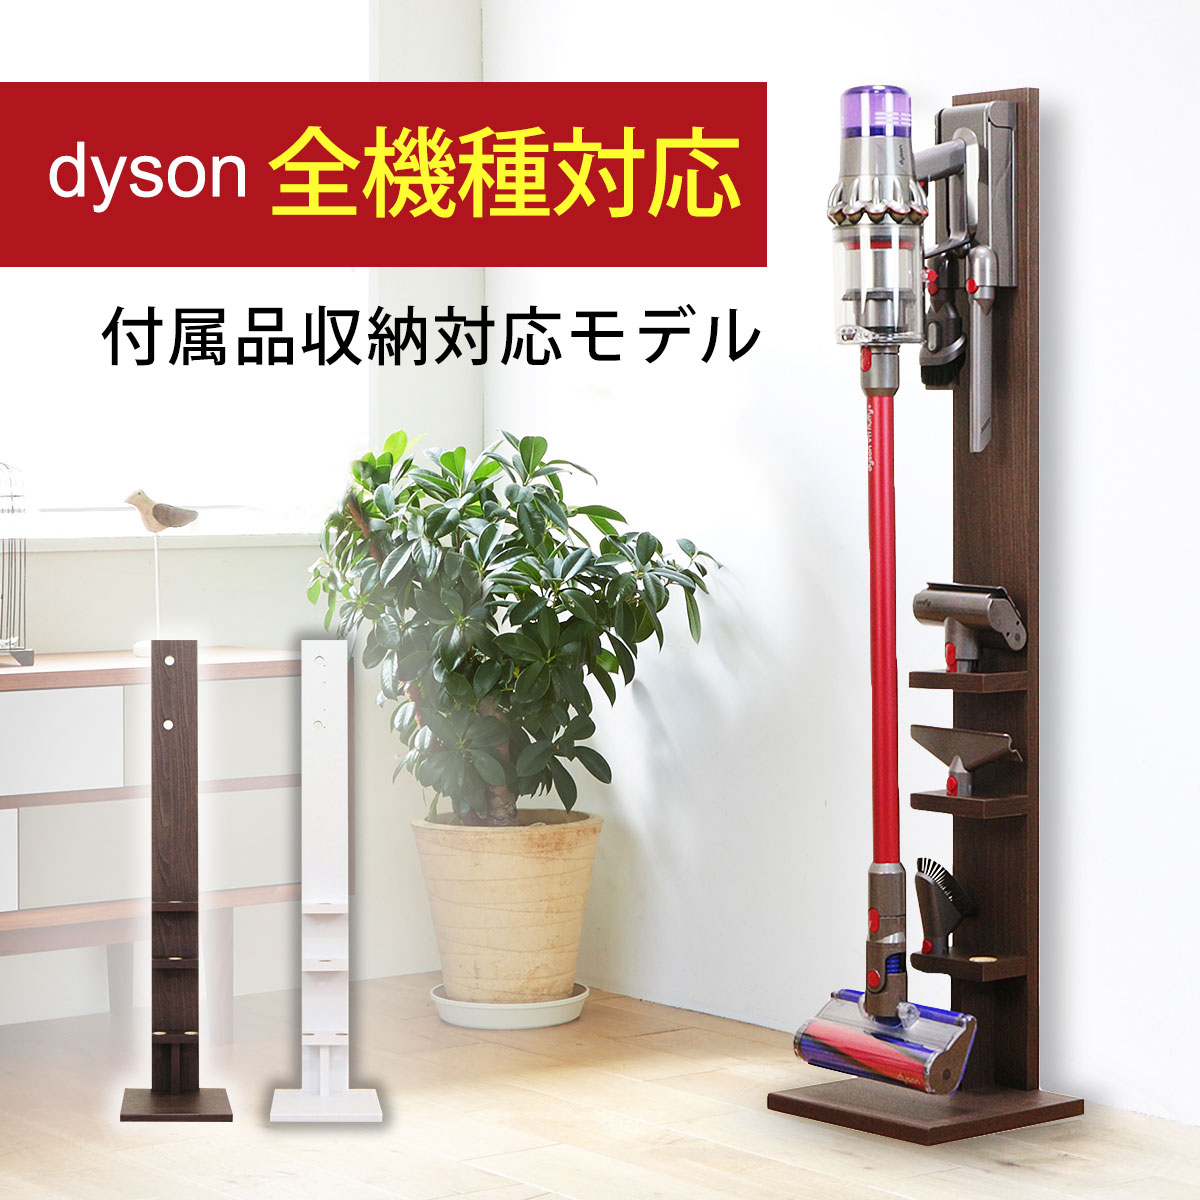 楽天市場 送料無料 ダイソン コードレスクリーナー 壁寄せ 充電スタンド付属品収納モデル 日本製 Dyson V15 V12 Micro Digital Slim V11 V10 V8 V7 V6 Dc74 Dc62 Dc45 Dc35対応 シアターハウス